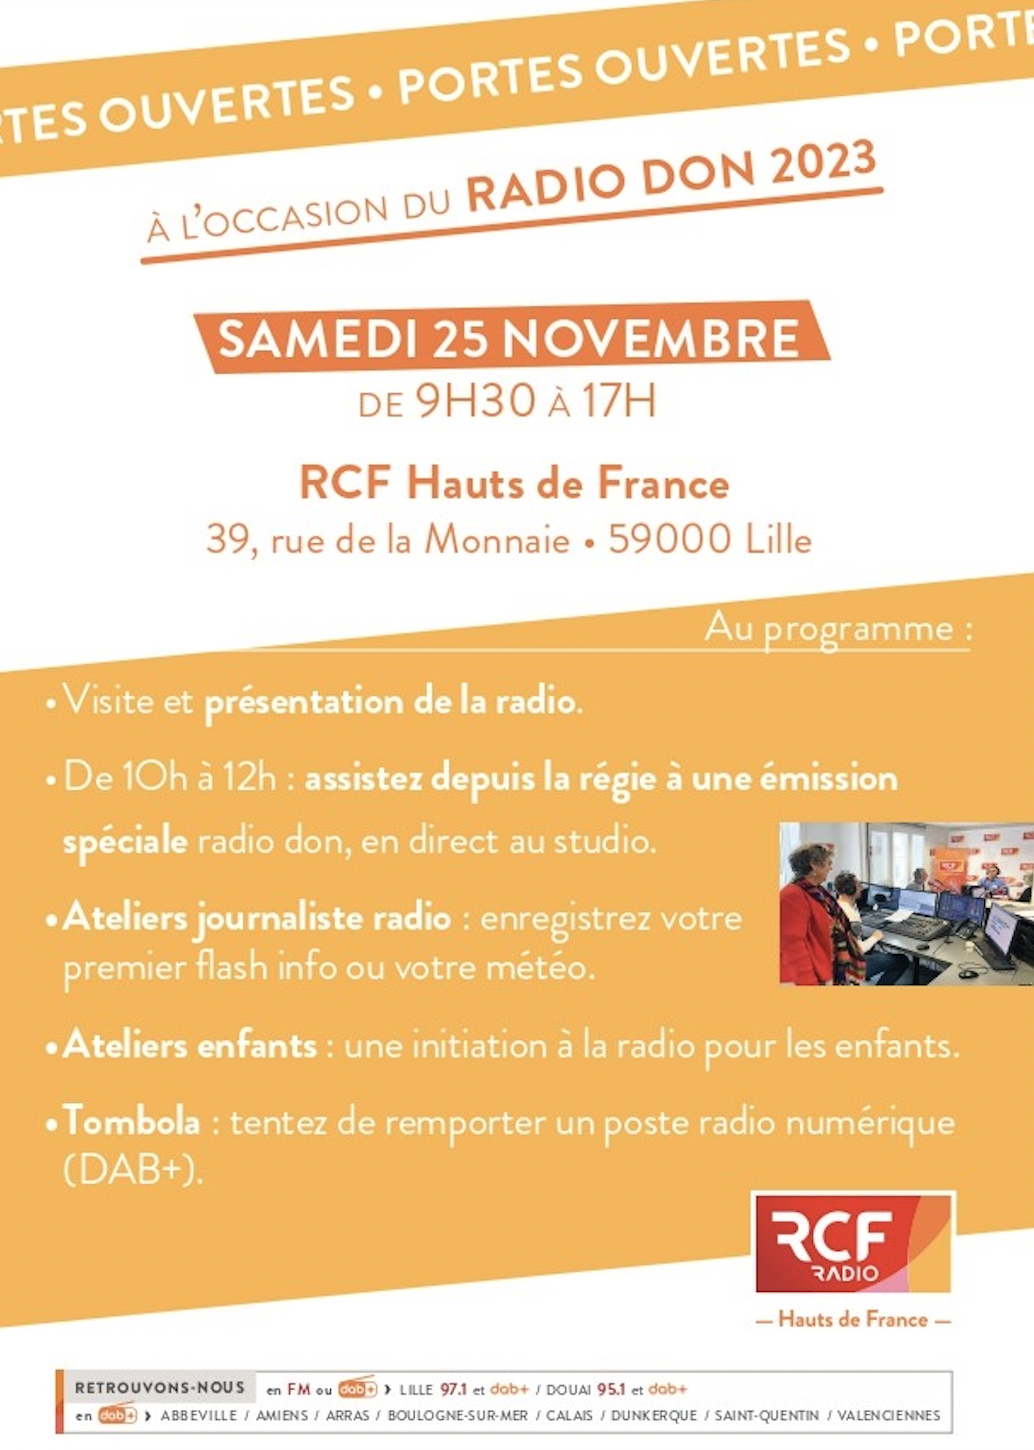 RCF Hauts de France ouvre ses studios